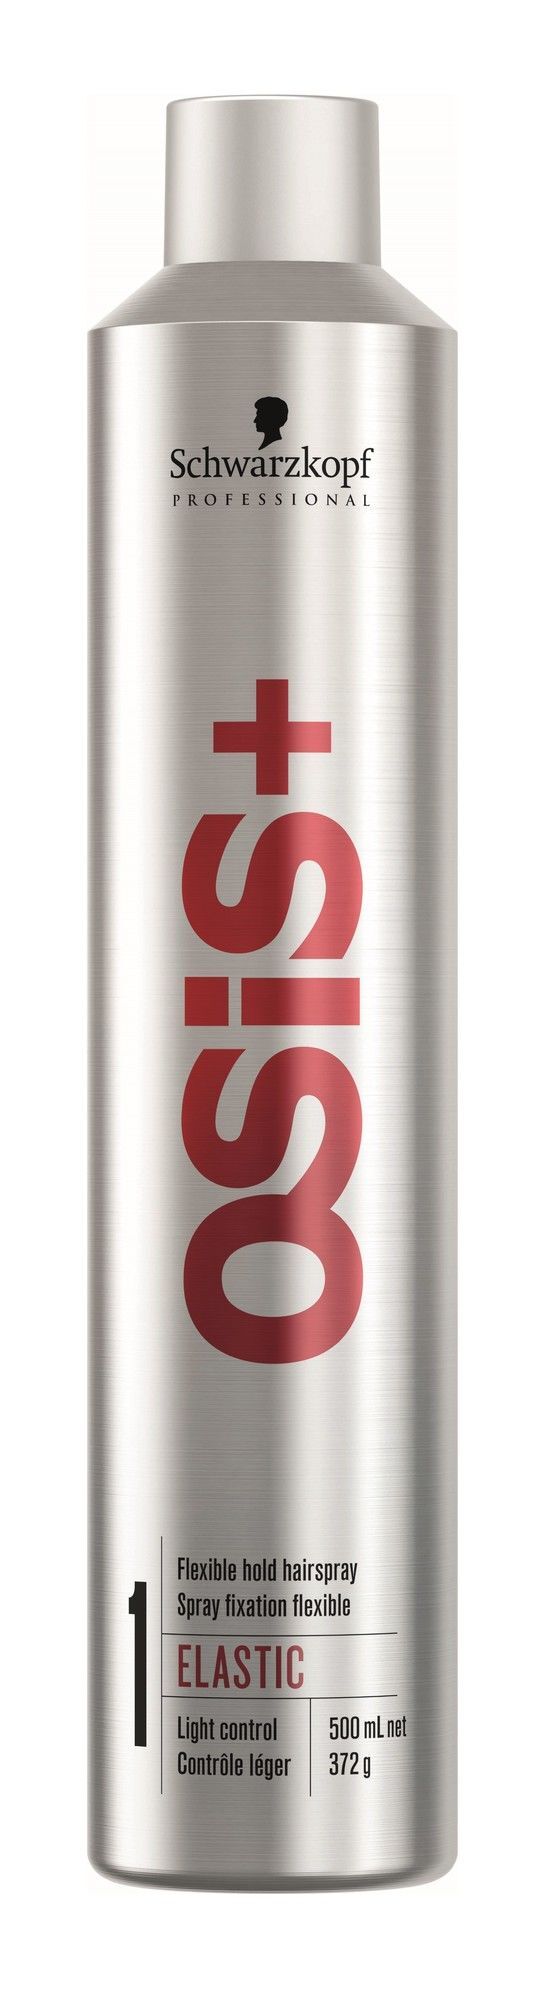 Schwarzkopf Osis Elastic Hairspray 500ml